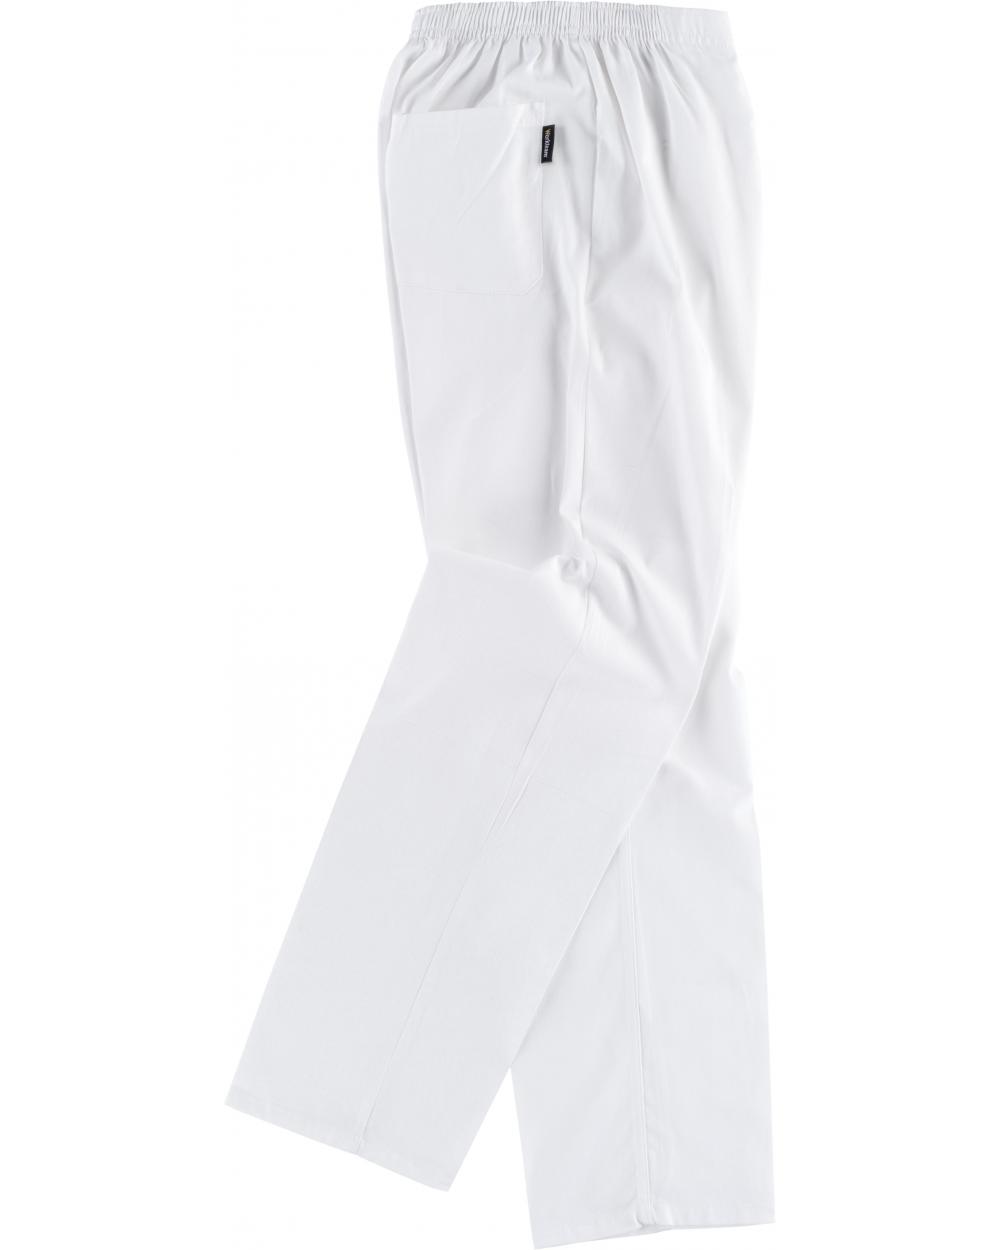 Comprar Pantalon sanitario unisex de algodon B9311 Blanco workteam barato